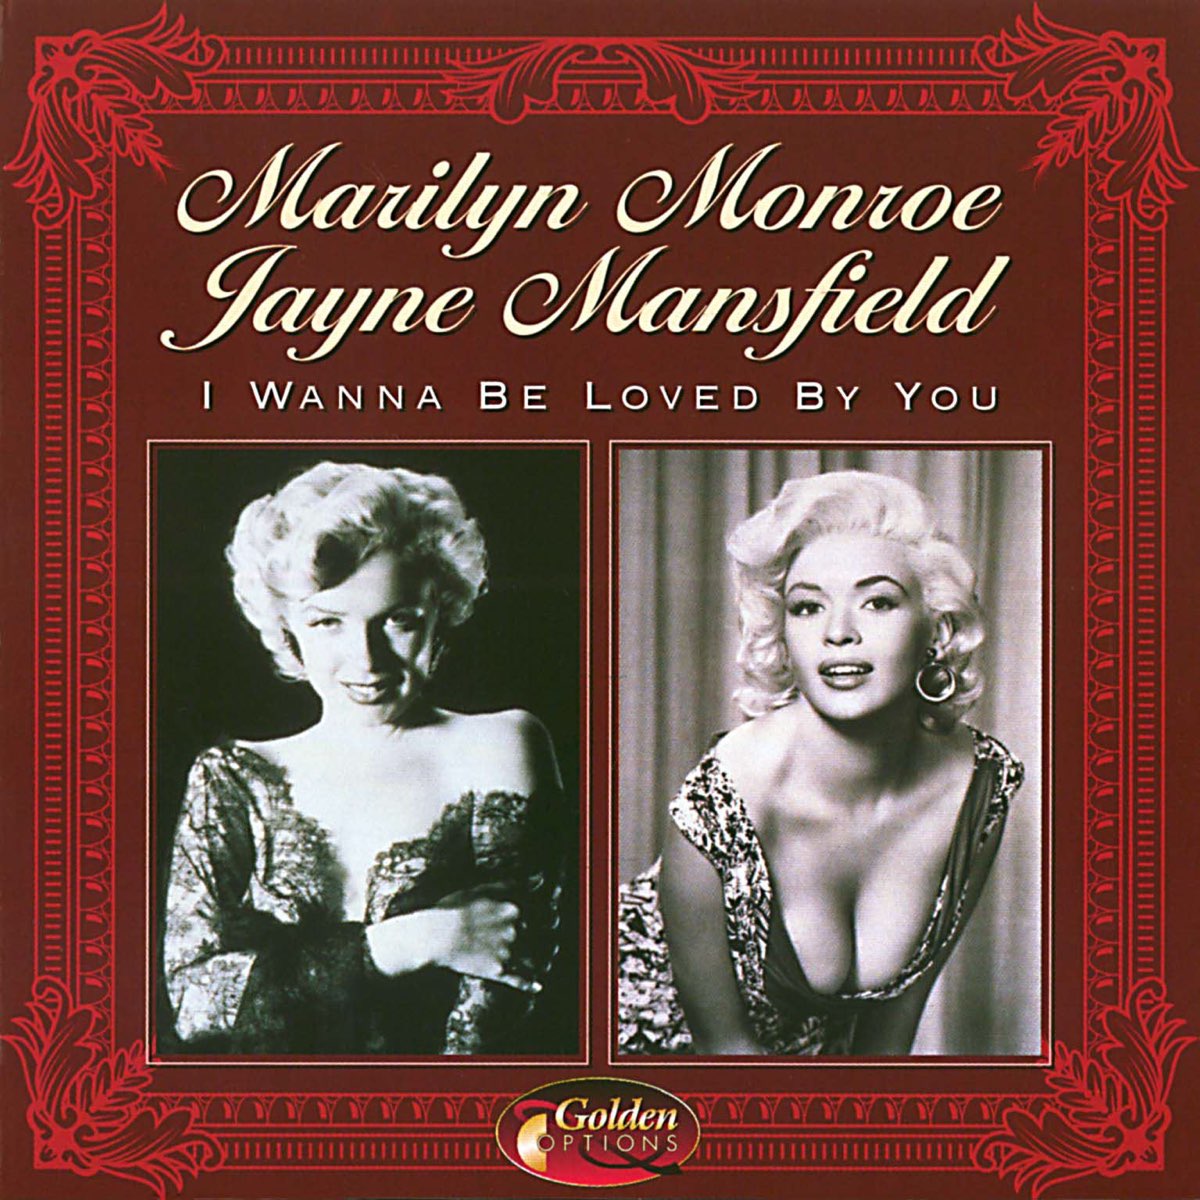 Мэрилин Монро i wanna be Loved by you. Marilyn Monroe текст i wanna be Loved by you. "Marilyn Monroe" "Jayne Mansfield". I wanna be Loved by you. I wanna be loved by you мэрилин